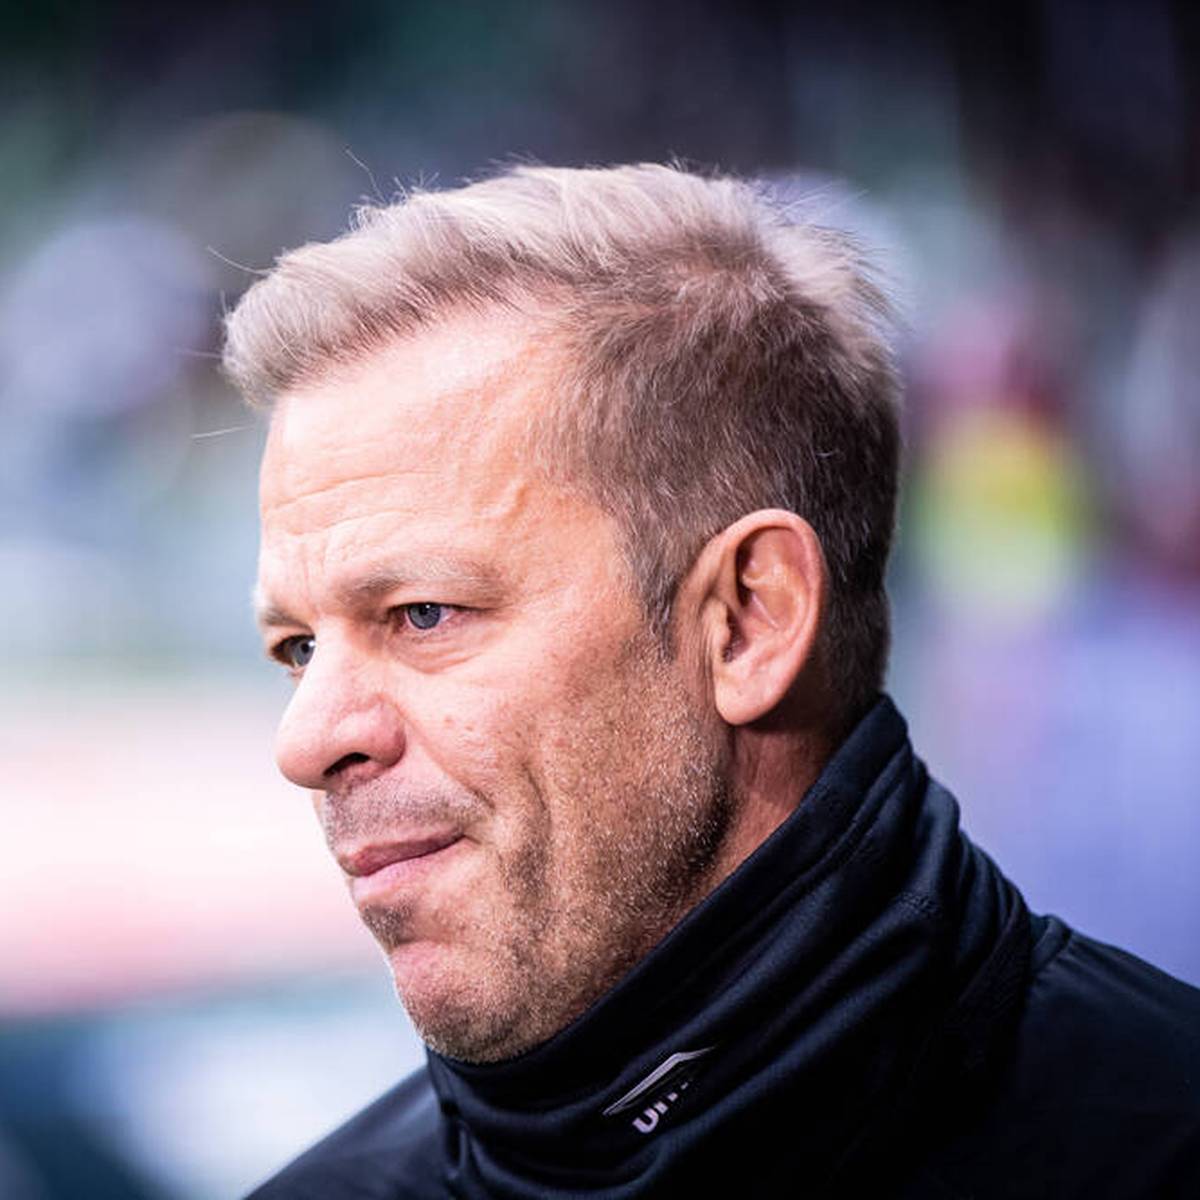 Der Impfpass-Skandal um Markus Anfang hat auch Monate später noch ein Nachspiel. Das DFB-Sportgericht verhängt eine Strafe für den Ex-Bremen-Coach.